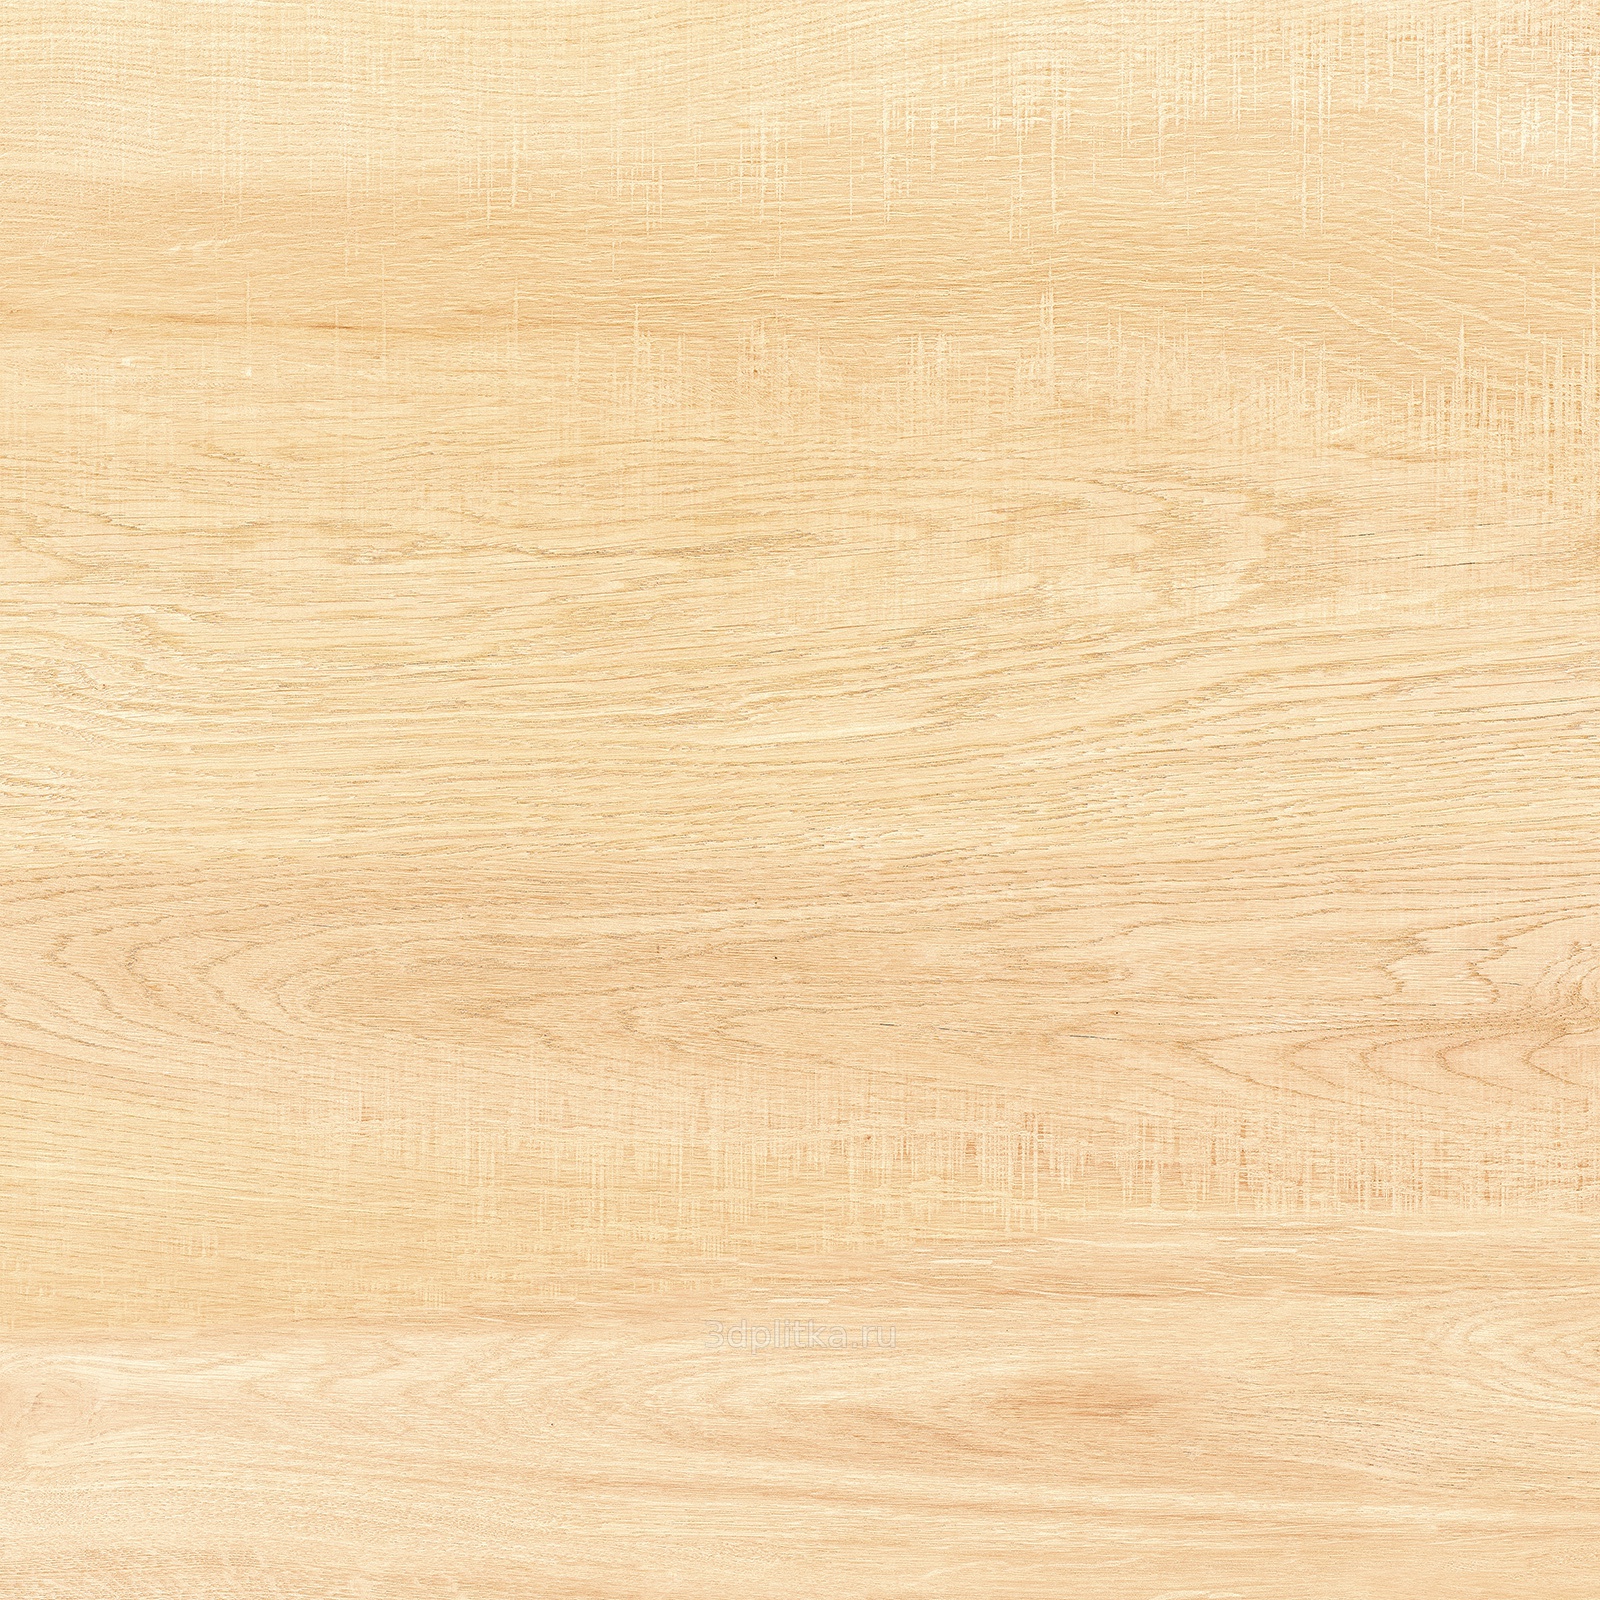 Керамическая плитка Briole Wood FT3BRE11 Керамогранит 410*410*8 (11 шт в уп/74 м в пал) / коллекция Canyon Delacora / производитель DELACORA / страна Россия